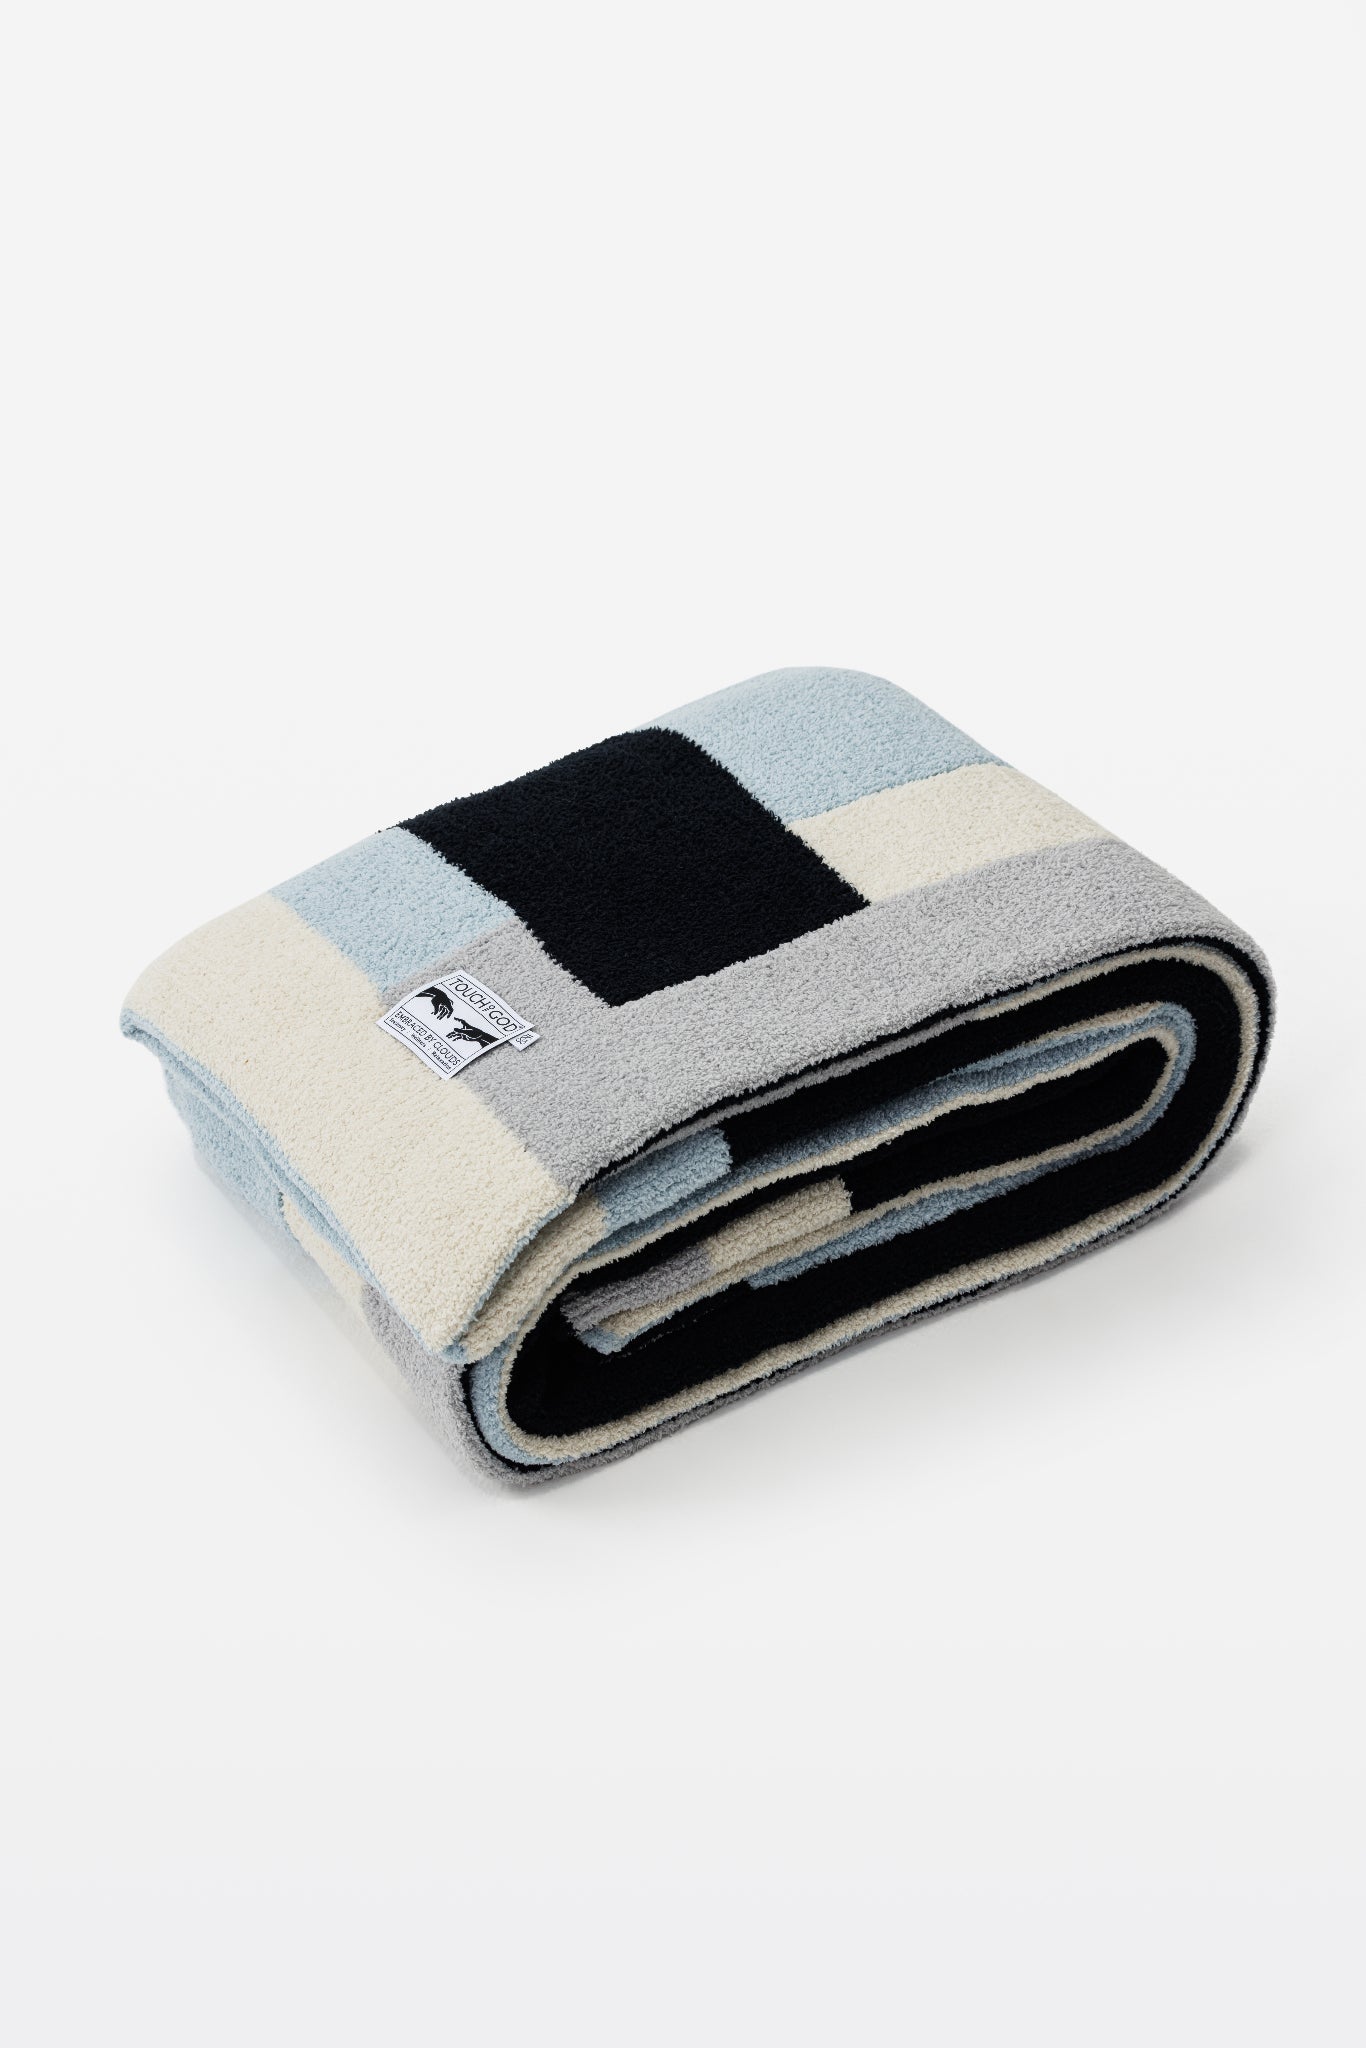 Talos Soft Plush Throw Blanket - Throw - Touchofgod.co